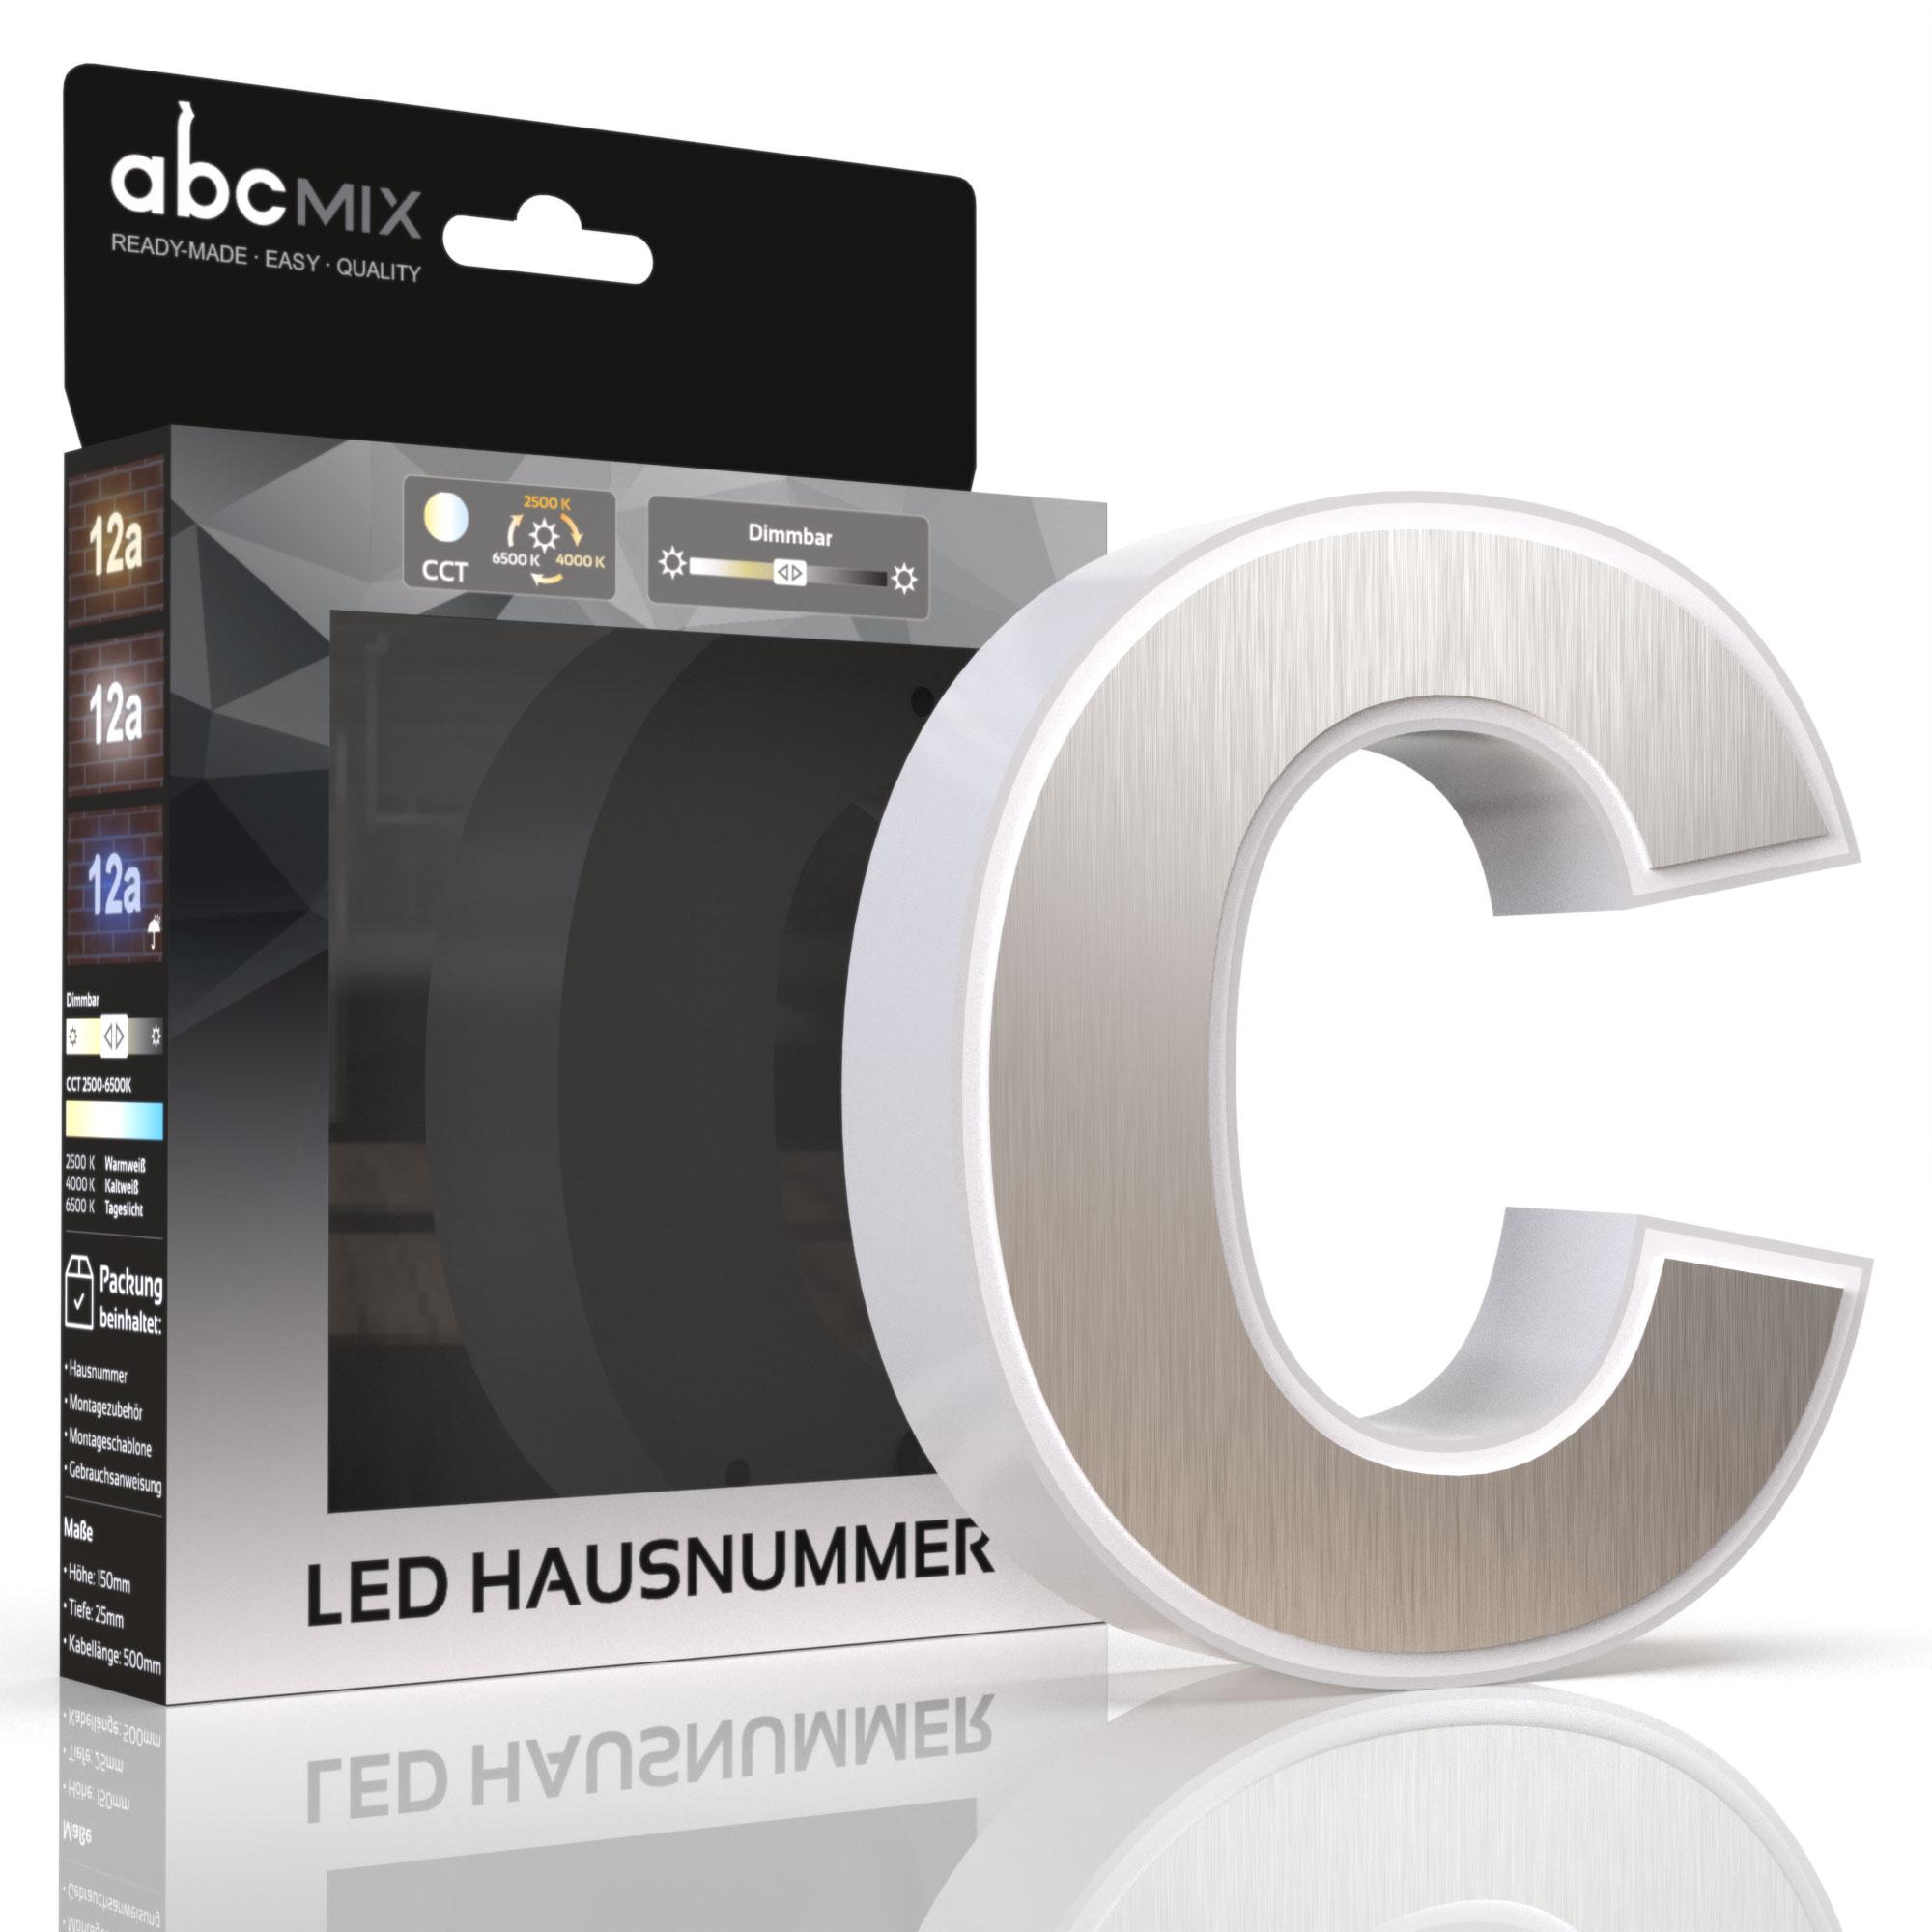 LED Hausnummer c inkl. Edelstahl-Cover - CCT 12V 2700K/4000K/6500K